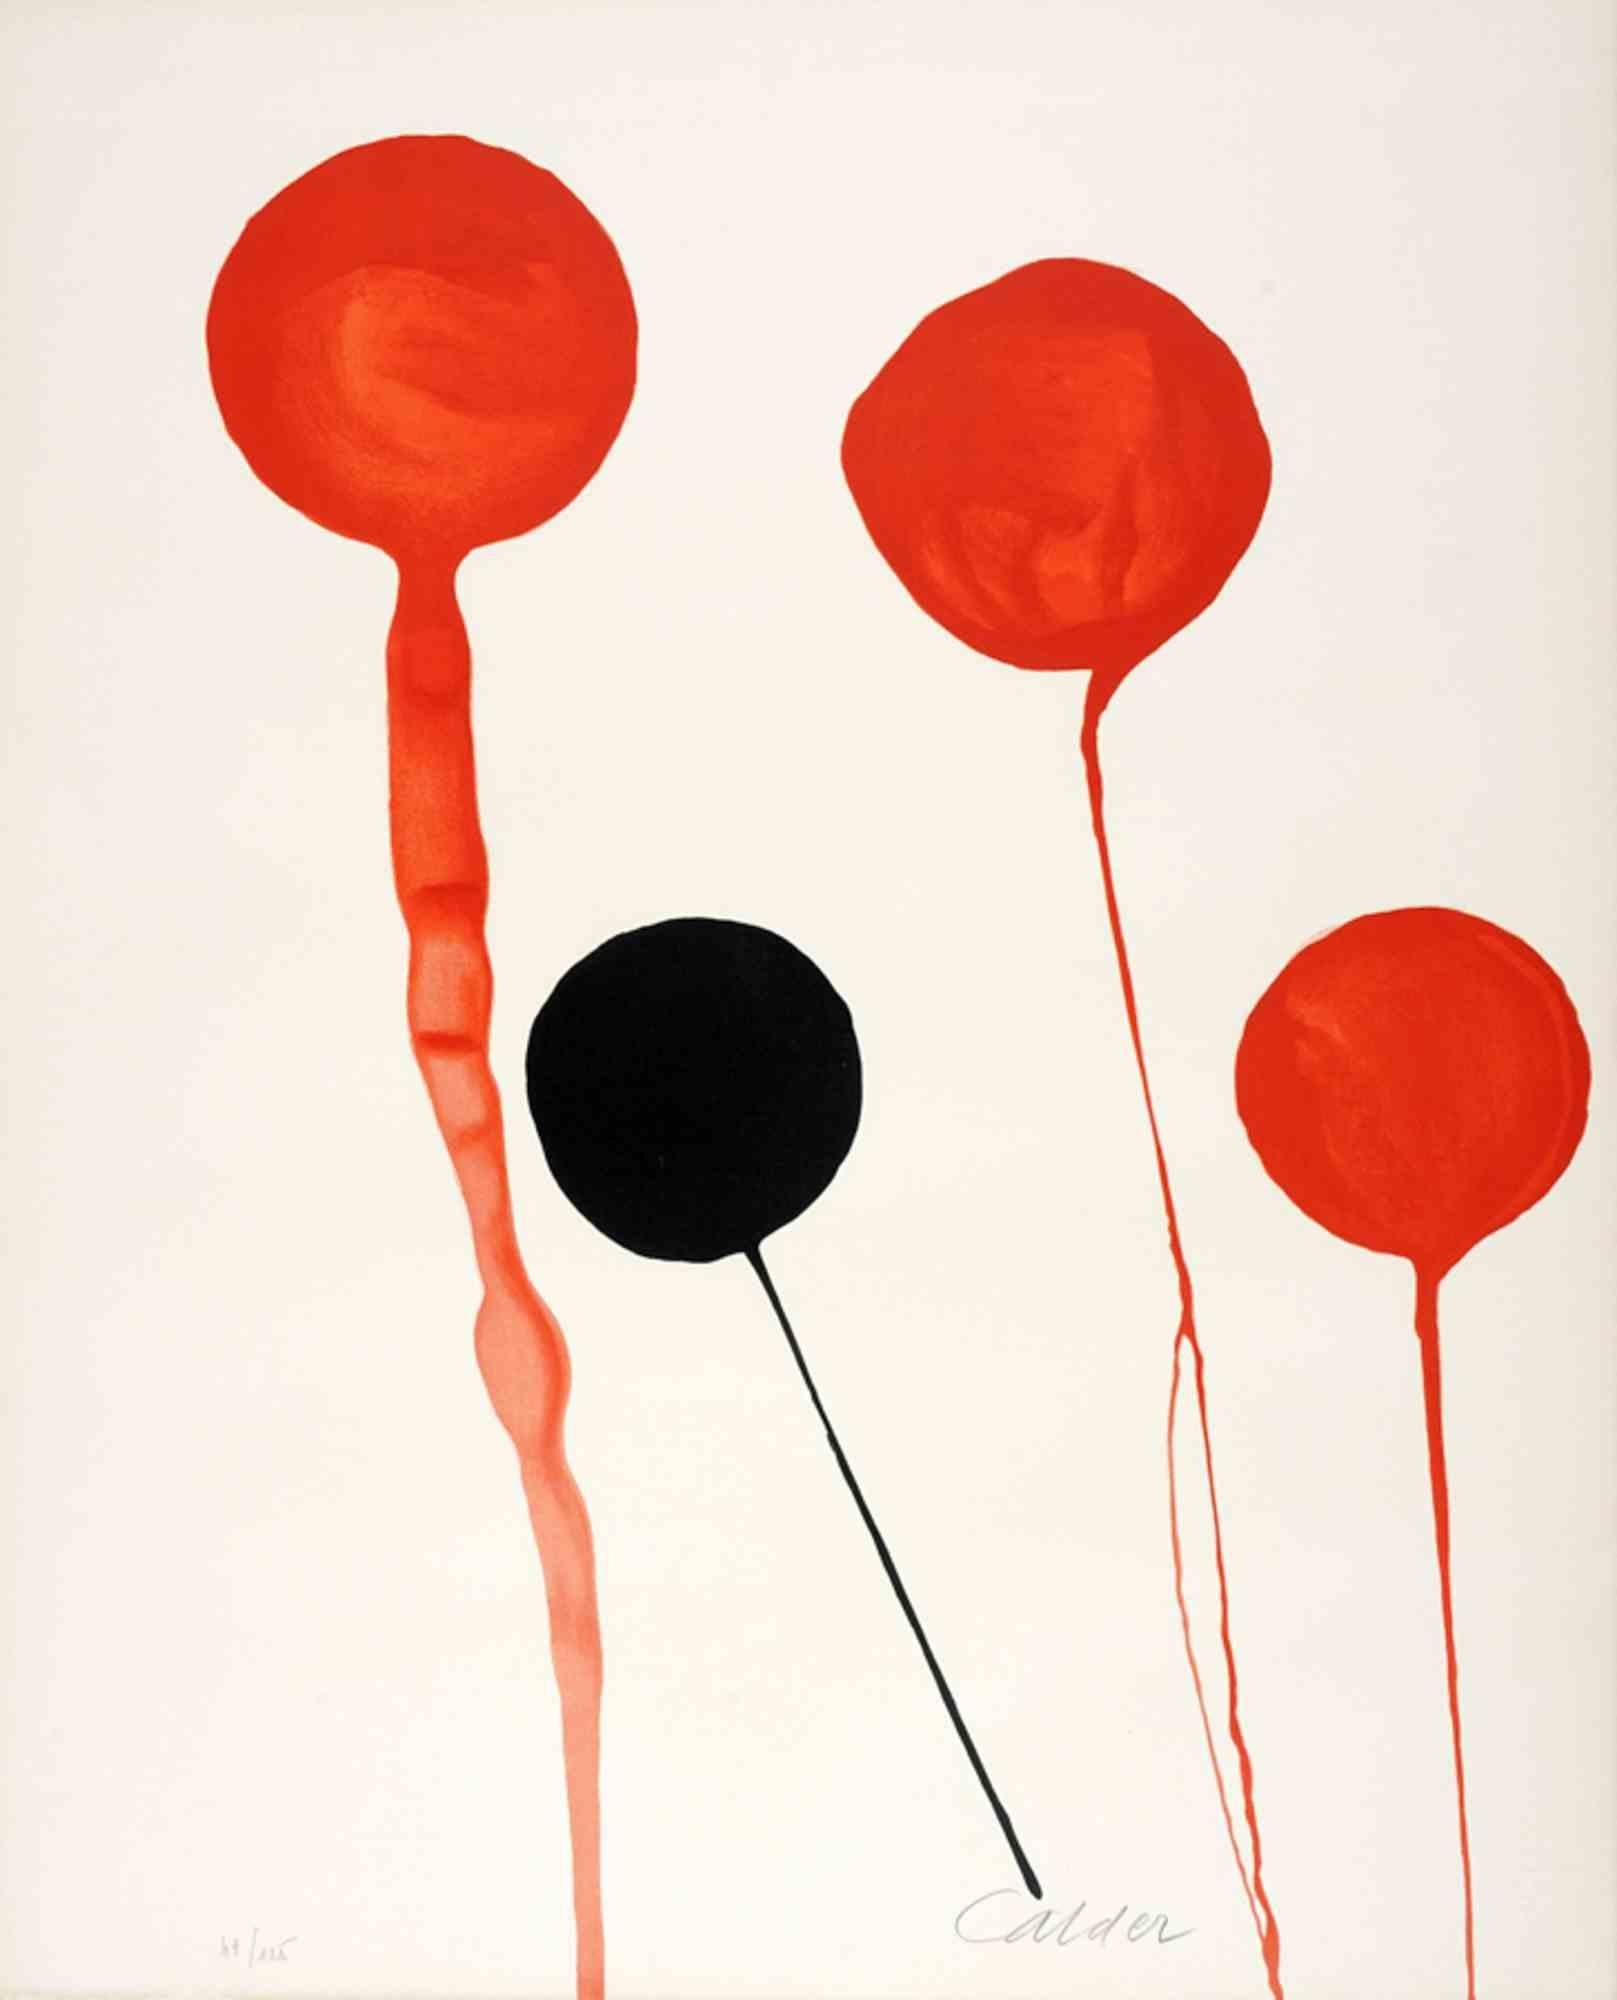 Untitled ist ein originales zeitgenössisches Kunstwerk von Alexander Calder.

Gemischtfarbige Lithographie.

Am unteren Rand handsigniert und nummeriert.

Auflage von 49/125

Guter Zustand bis auf eine leichte Vergilbung des Papiers am Rand.
